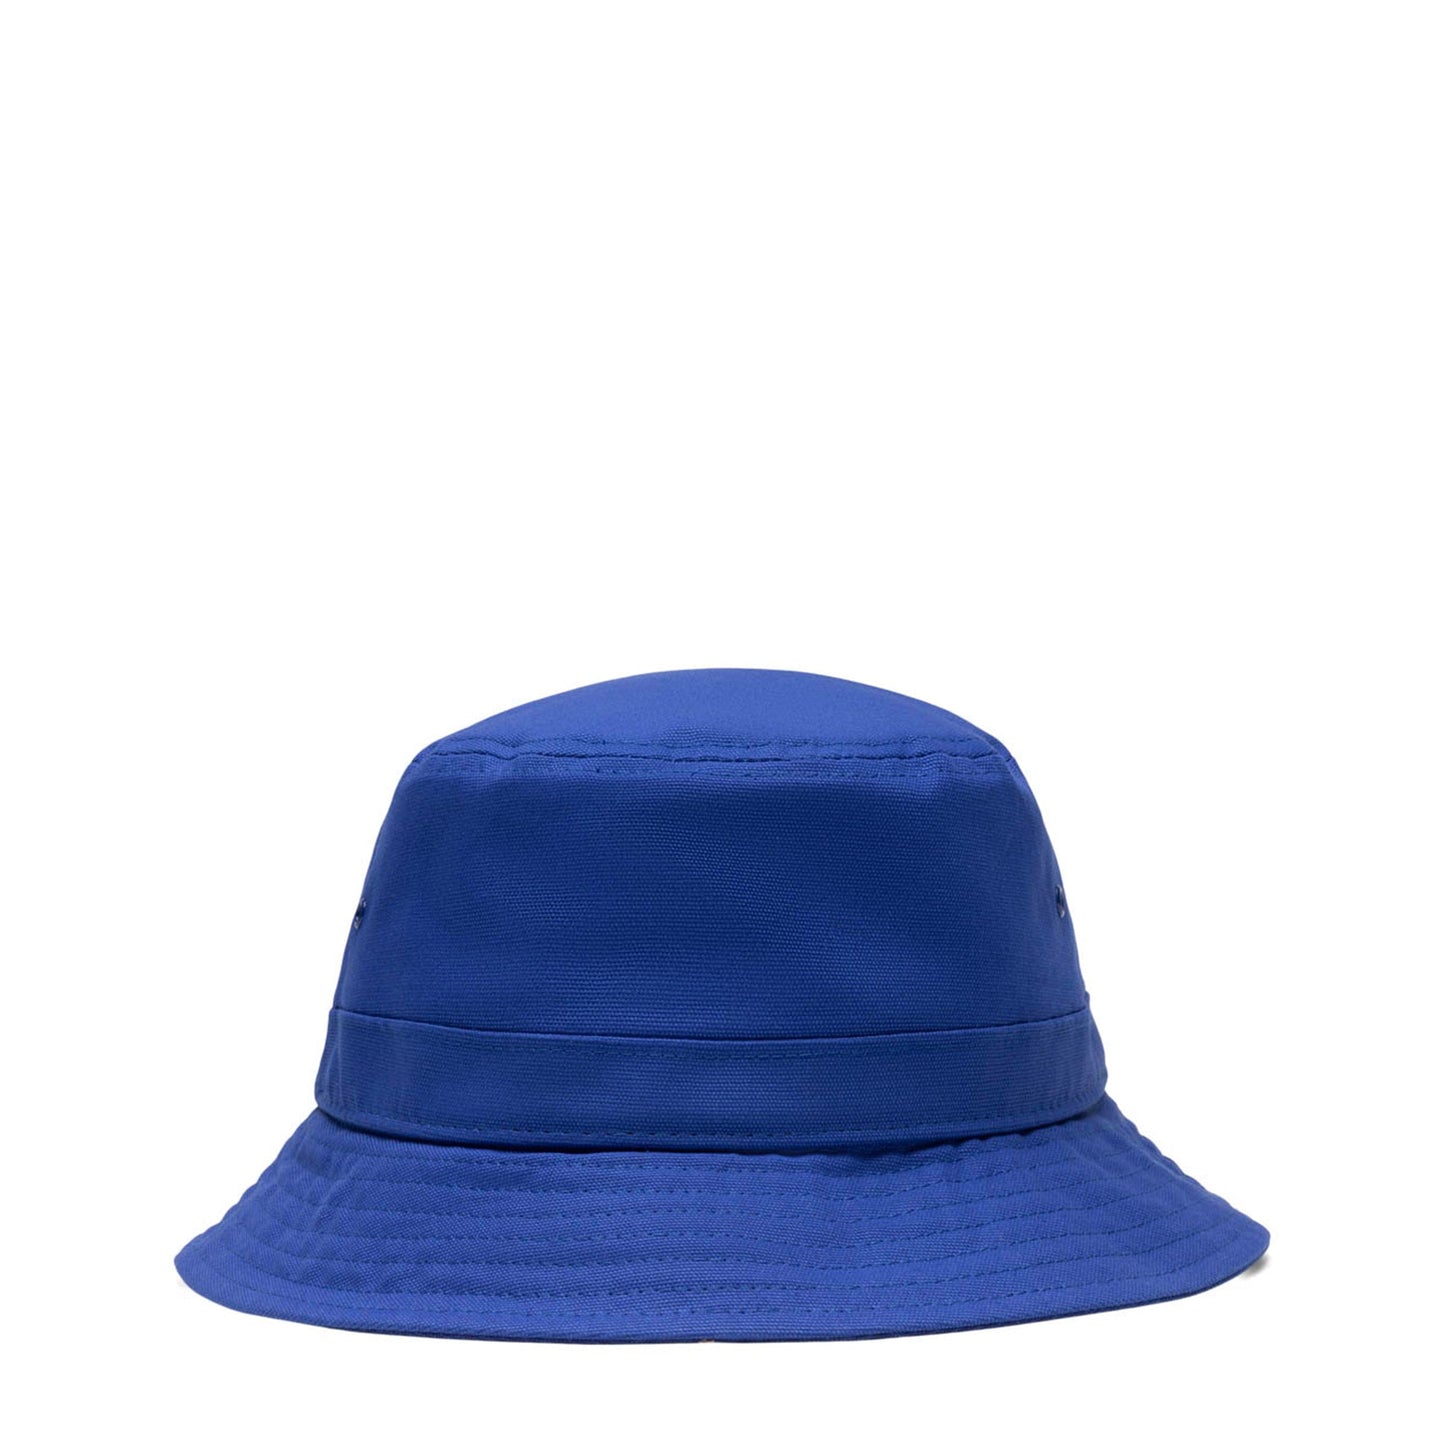 Carhartt WIP Headwear SCRIPT BUCKET HAT